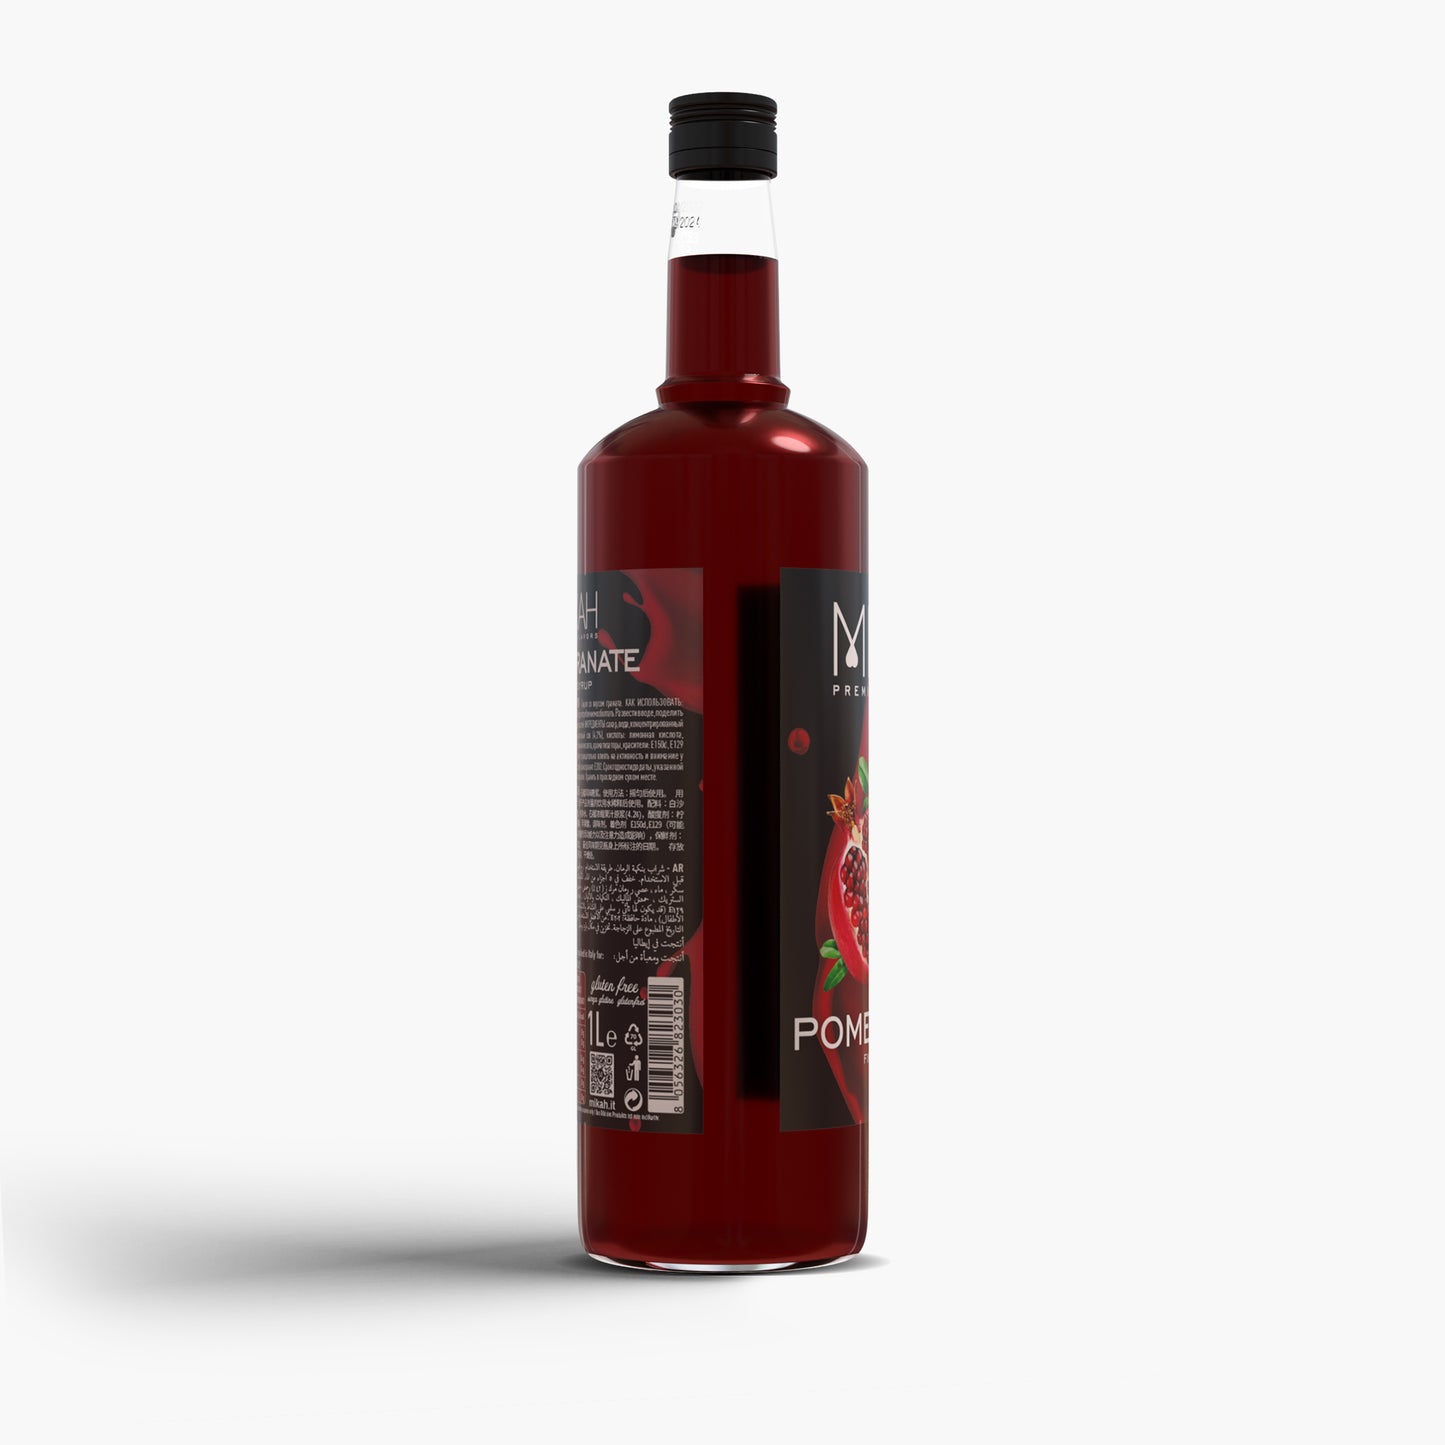 
                  
                    Sciroppo Mikah Premium Flavors - Pomegranate (Melograno) 1L
                  
                